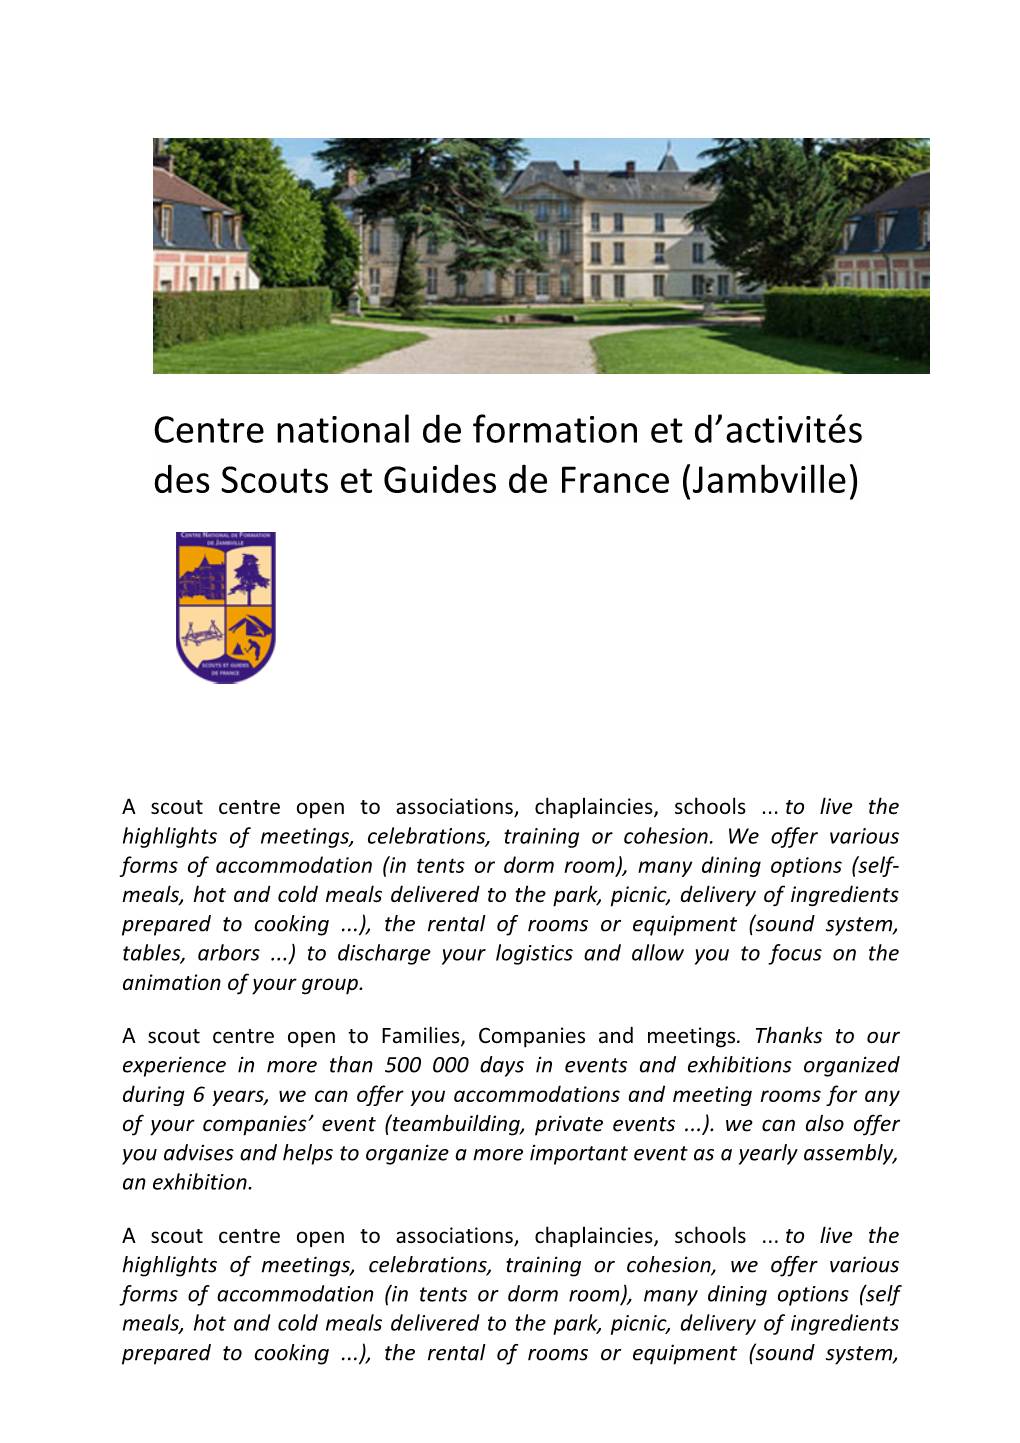 Centre National De Formation Et D'activités Des Scouts Et Guides De